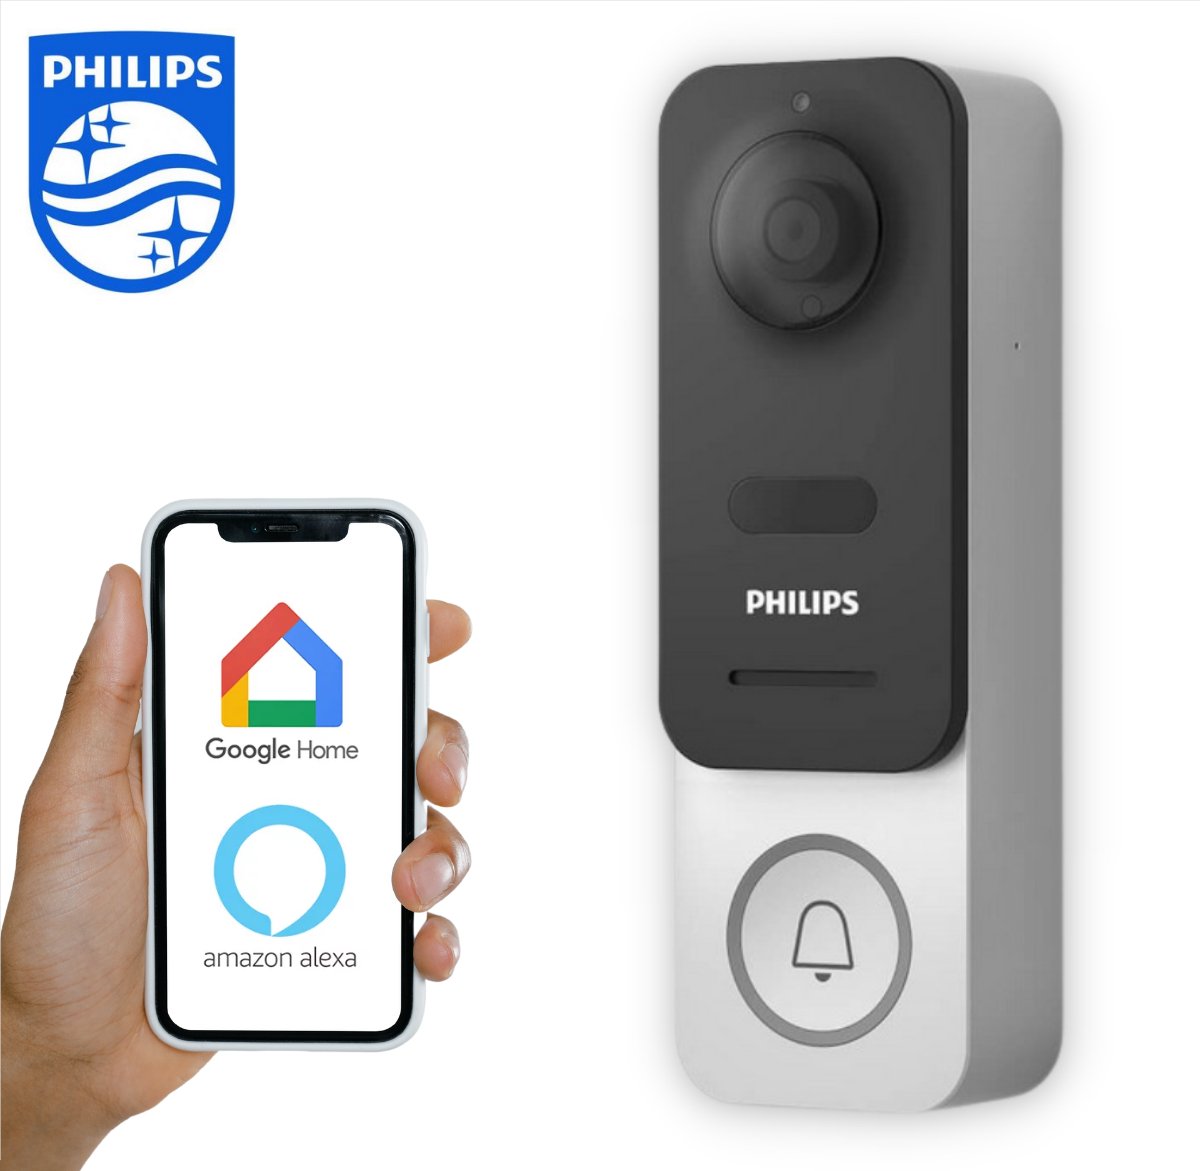 La sonnette connectée Philips Link